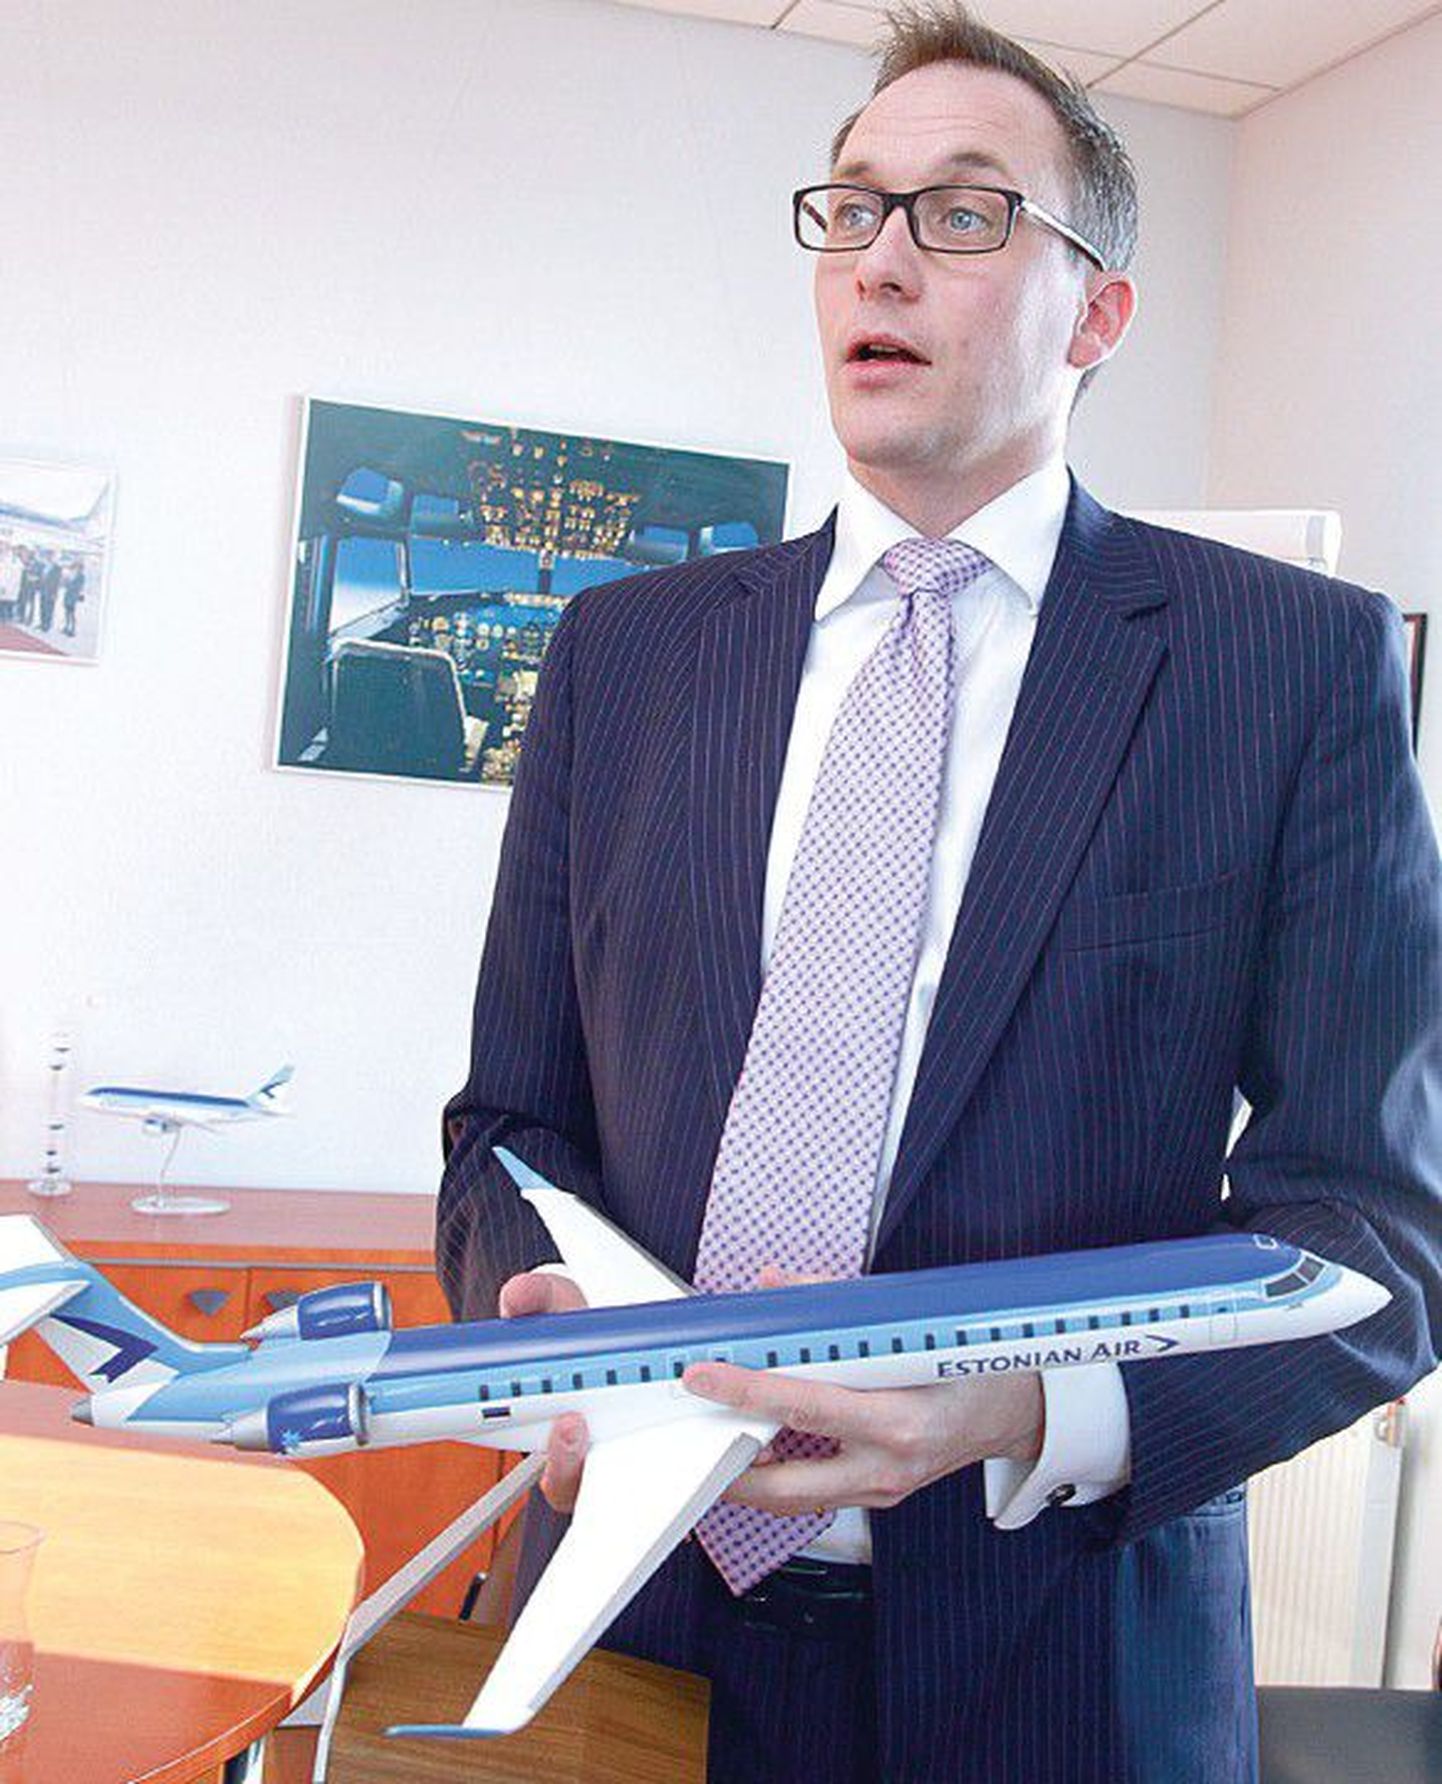 Руководитель Estonian Air Теро Таскила ищет партнеров, которые помогут фирме встать на ноги. До сих пор, по его словам, переговоры велись с двумя фирмами.